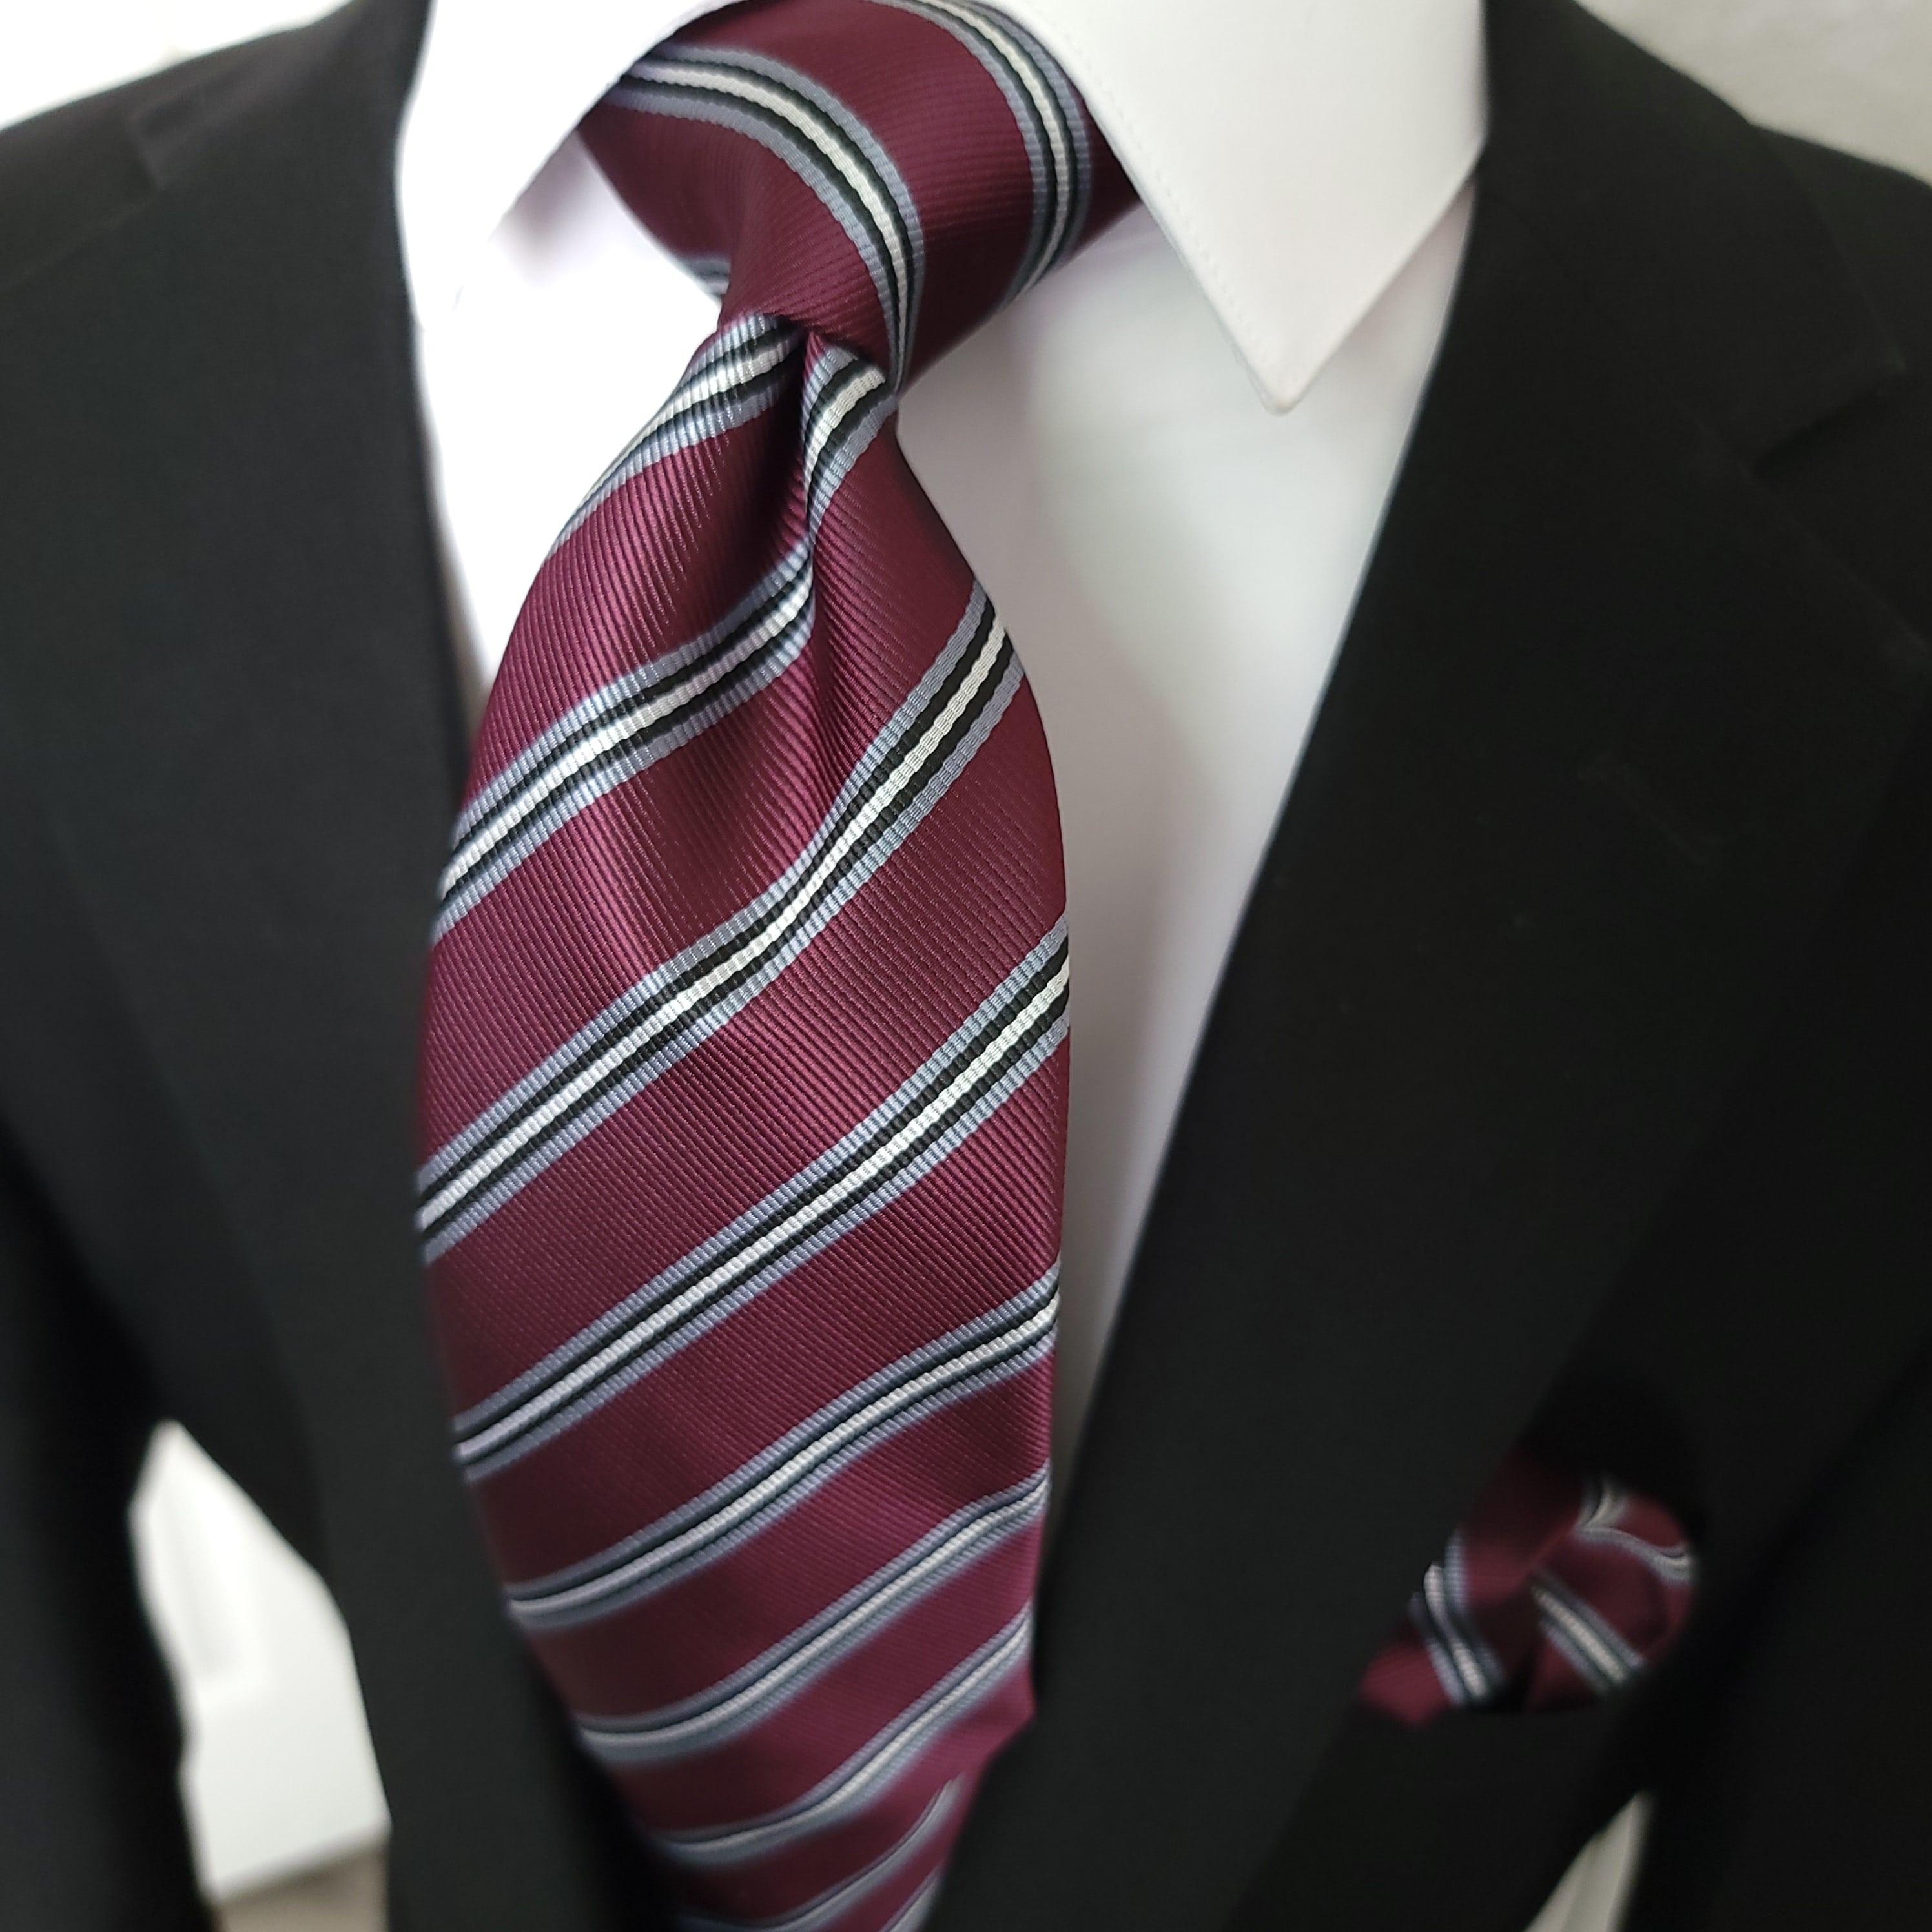 Purple Striped Silk Tie Pocket Square Cufflink Set - STYLETIE